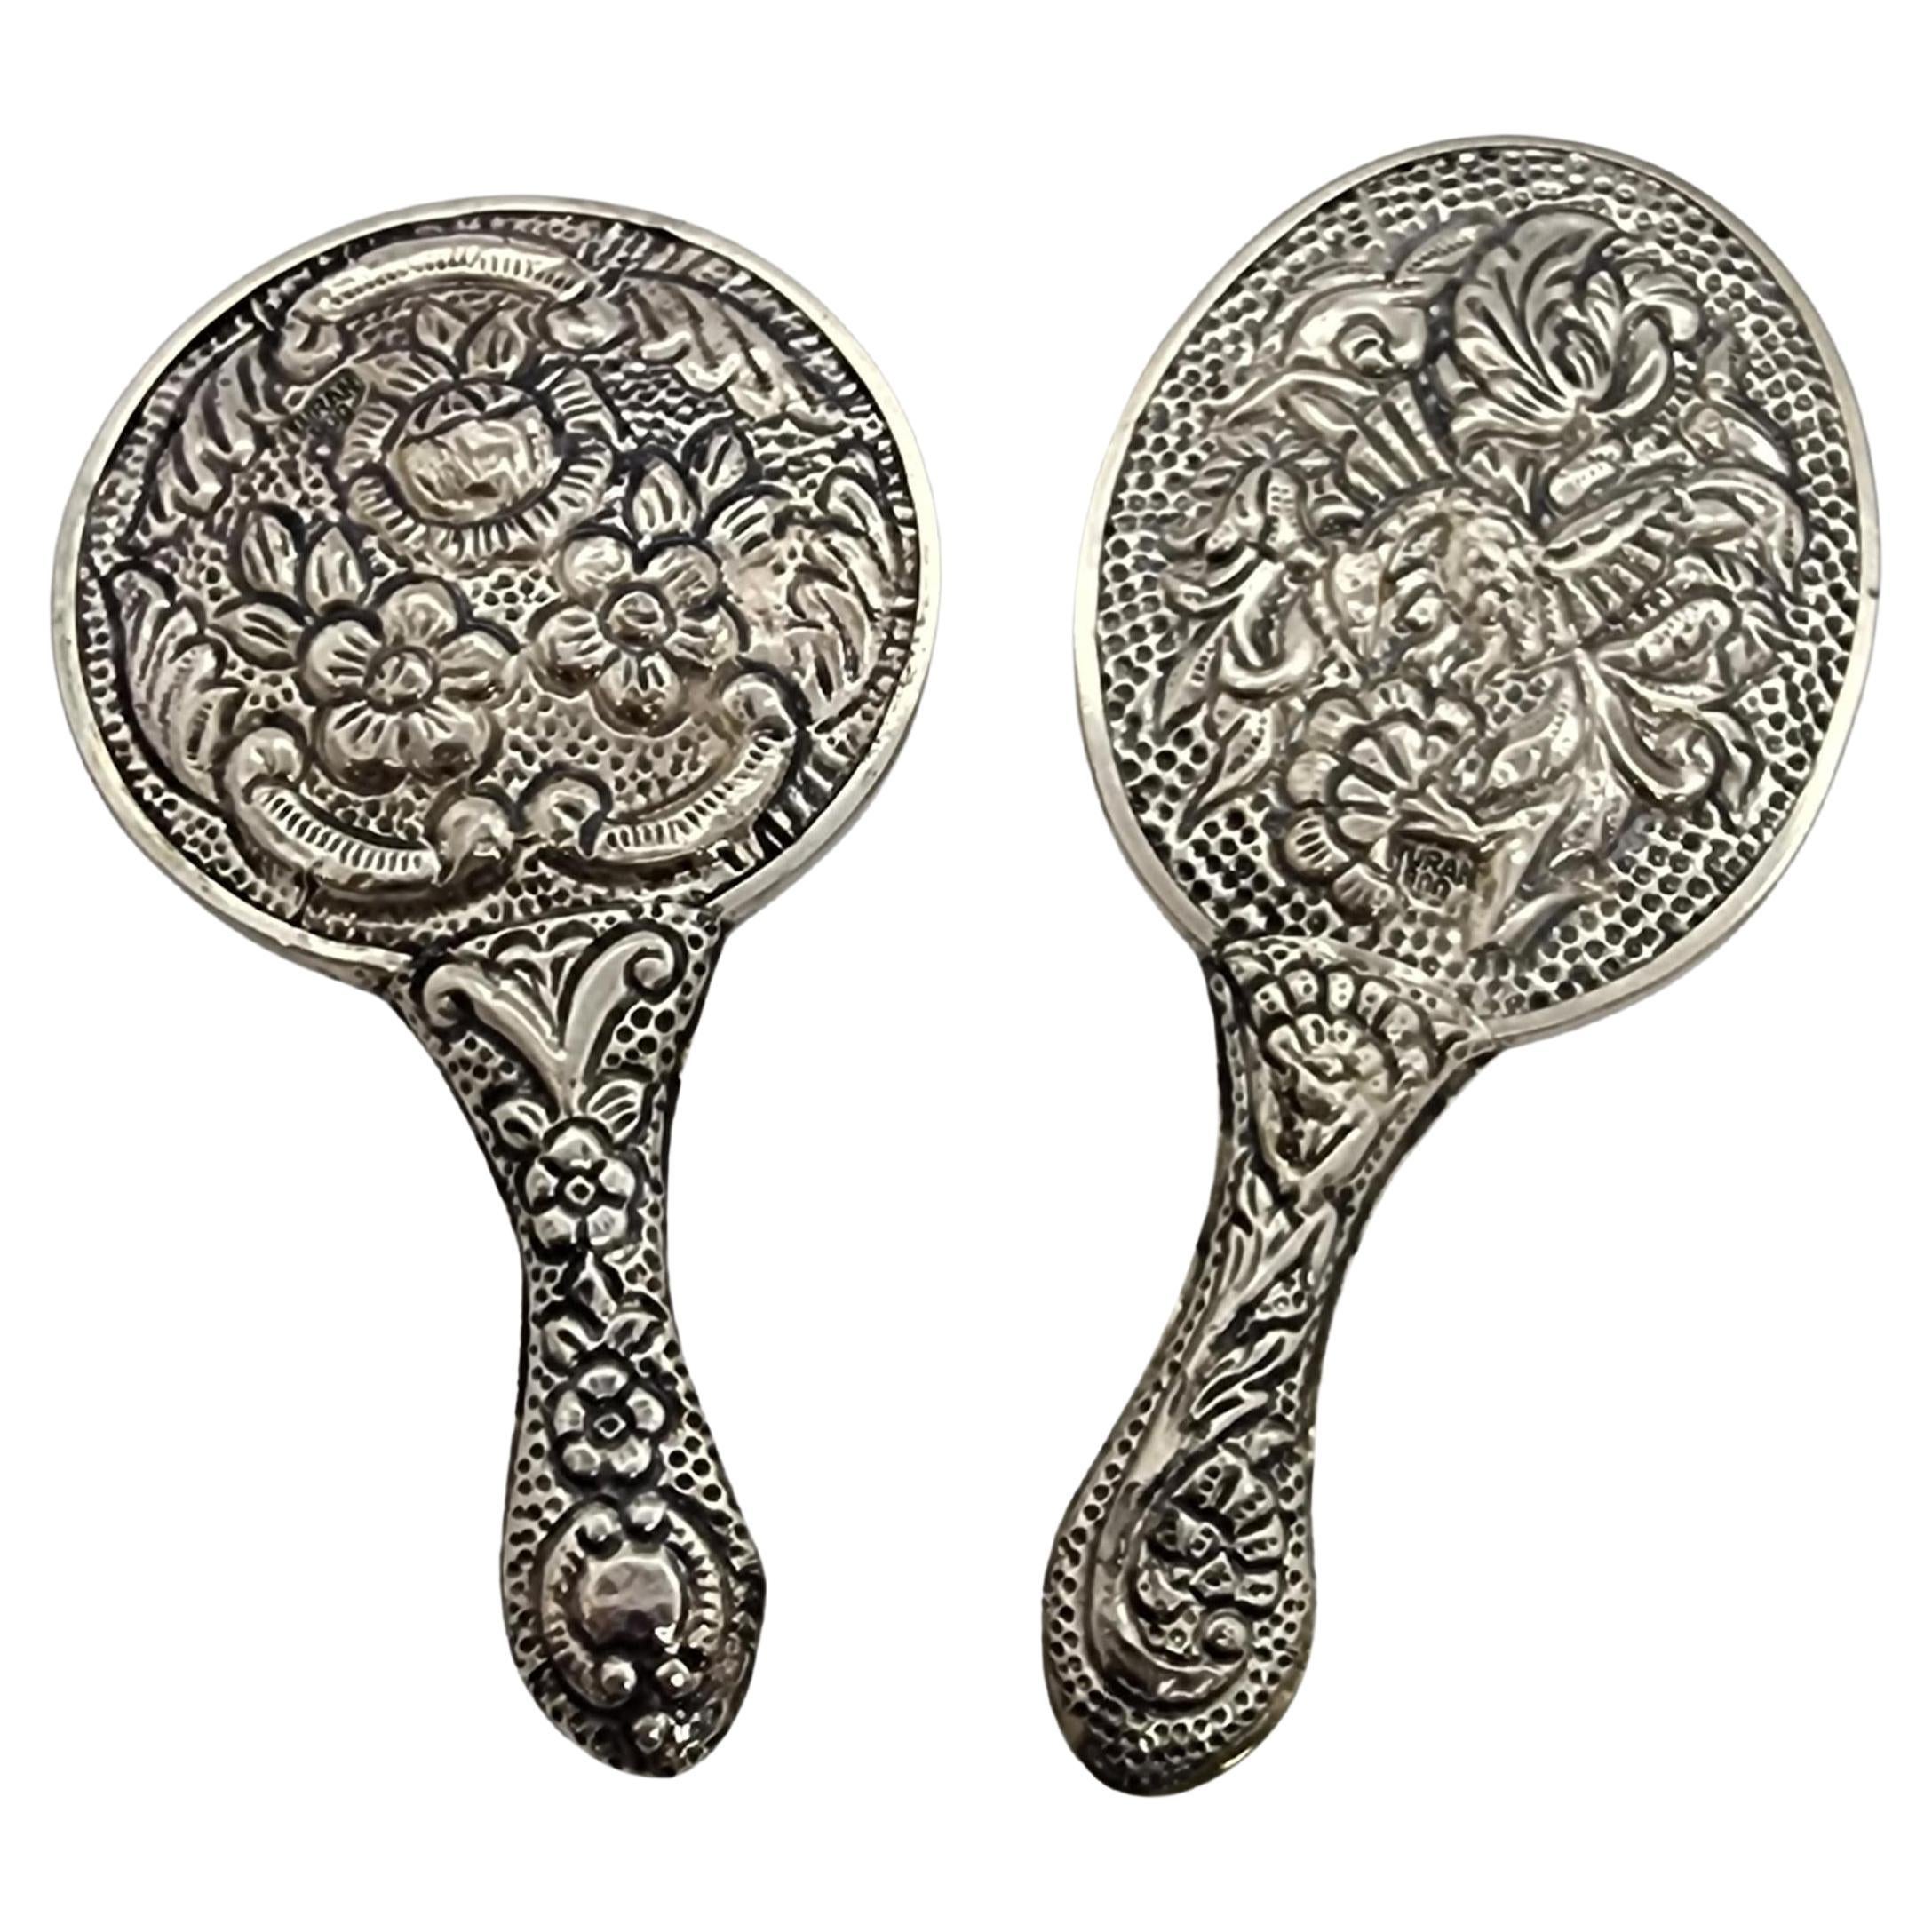 Set von 2 türkischen Silberrepousse-Handspiegeln #15964 aus der Türkei 900